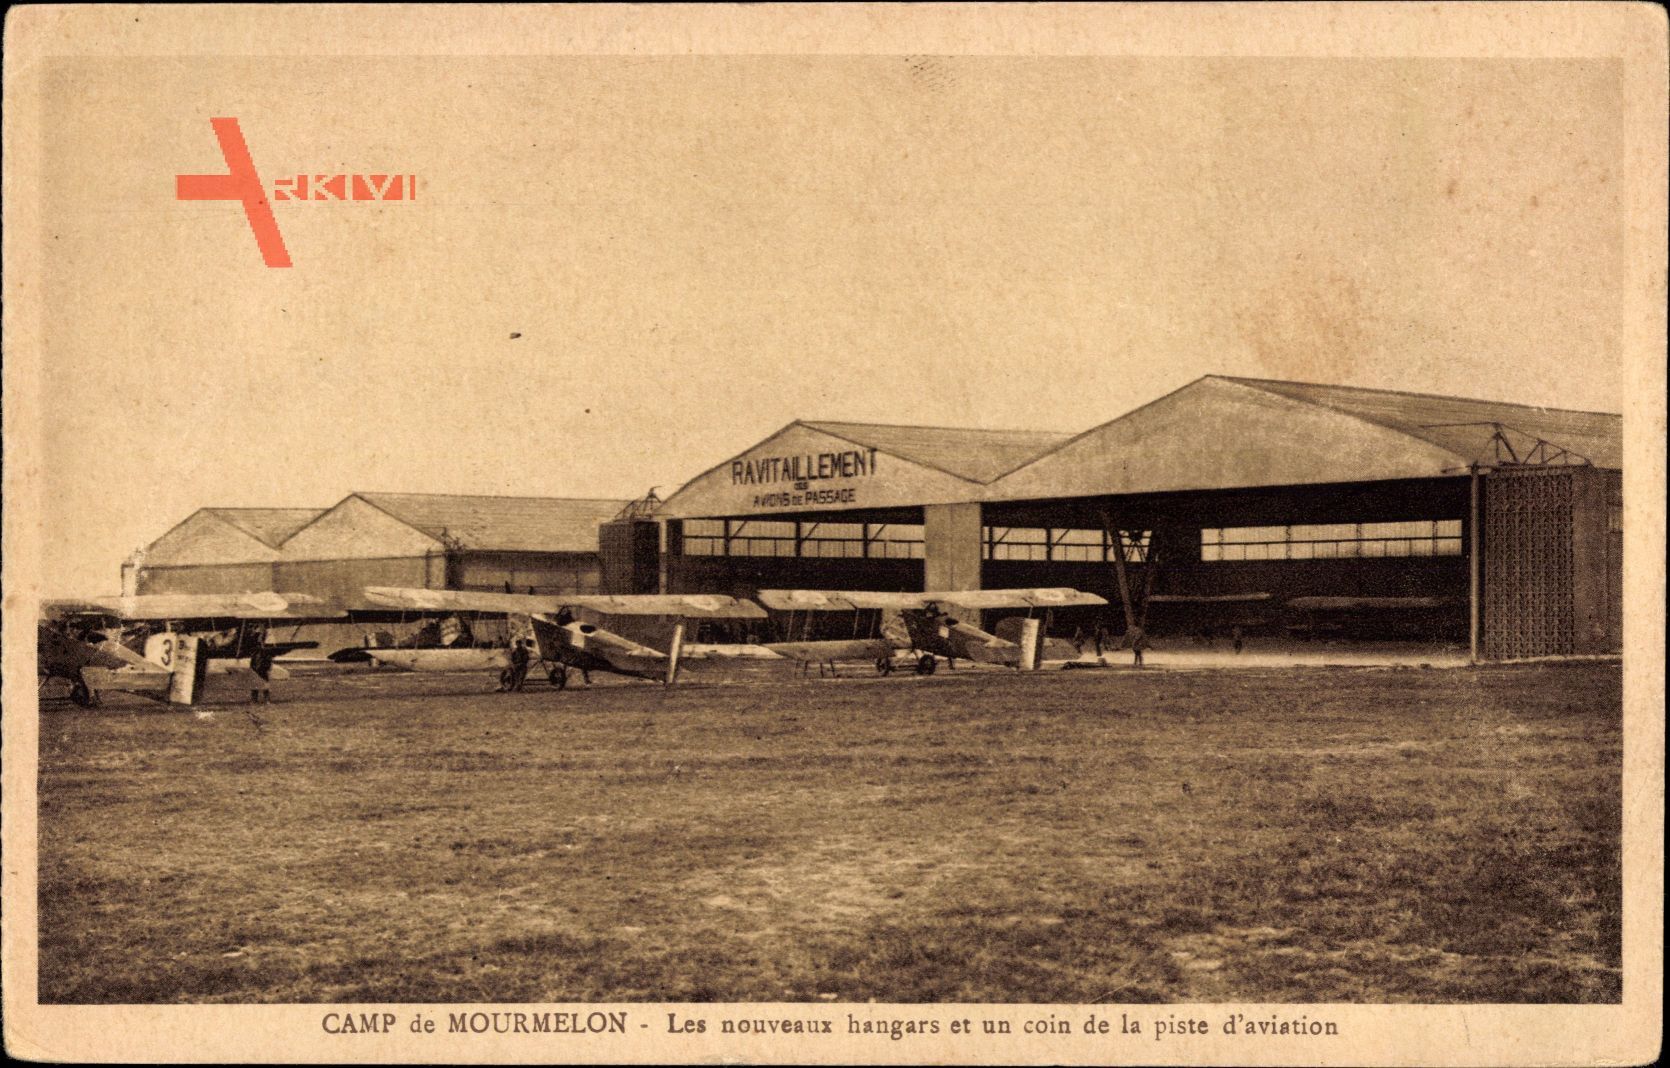 Camp de Mourmelon Marne, Les nouveaux hangars et un coin de la piste